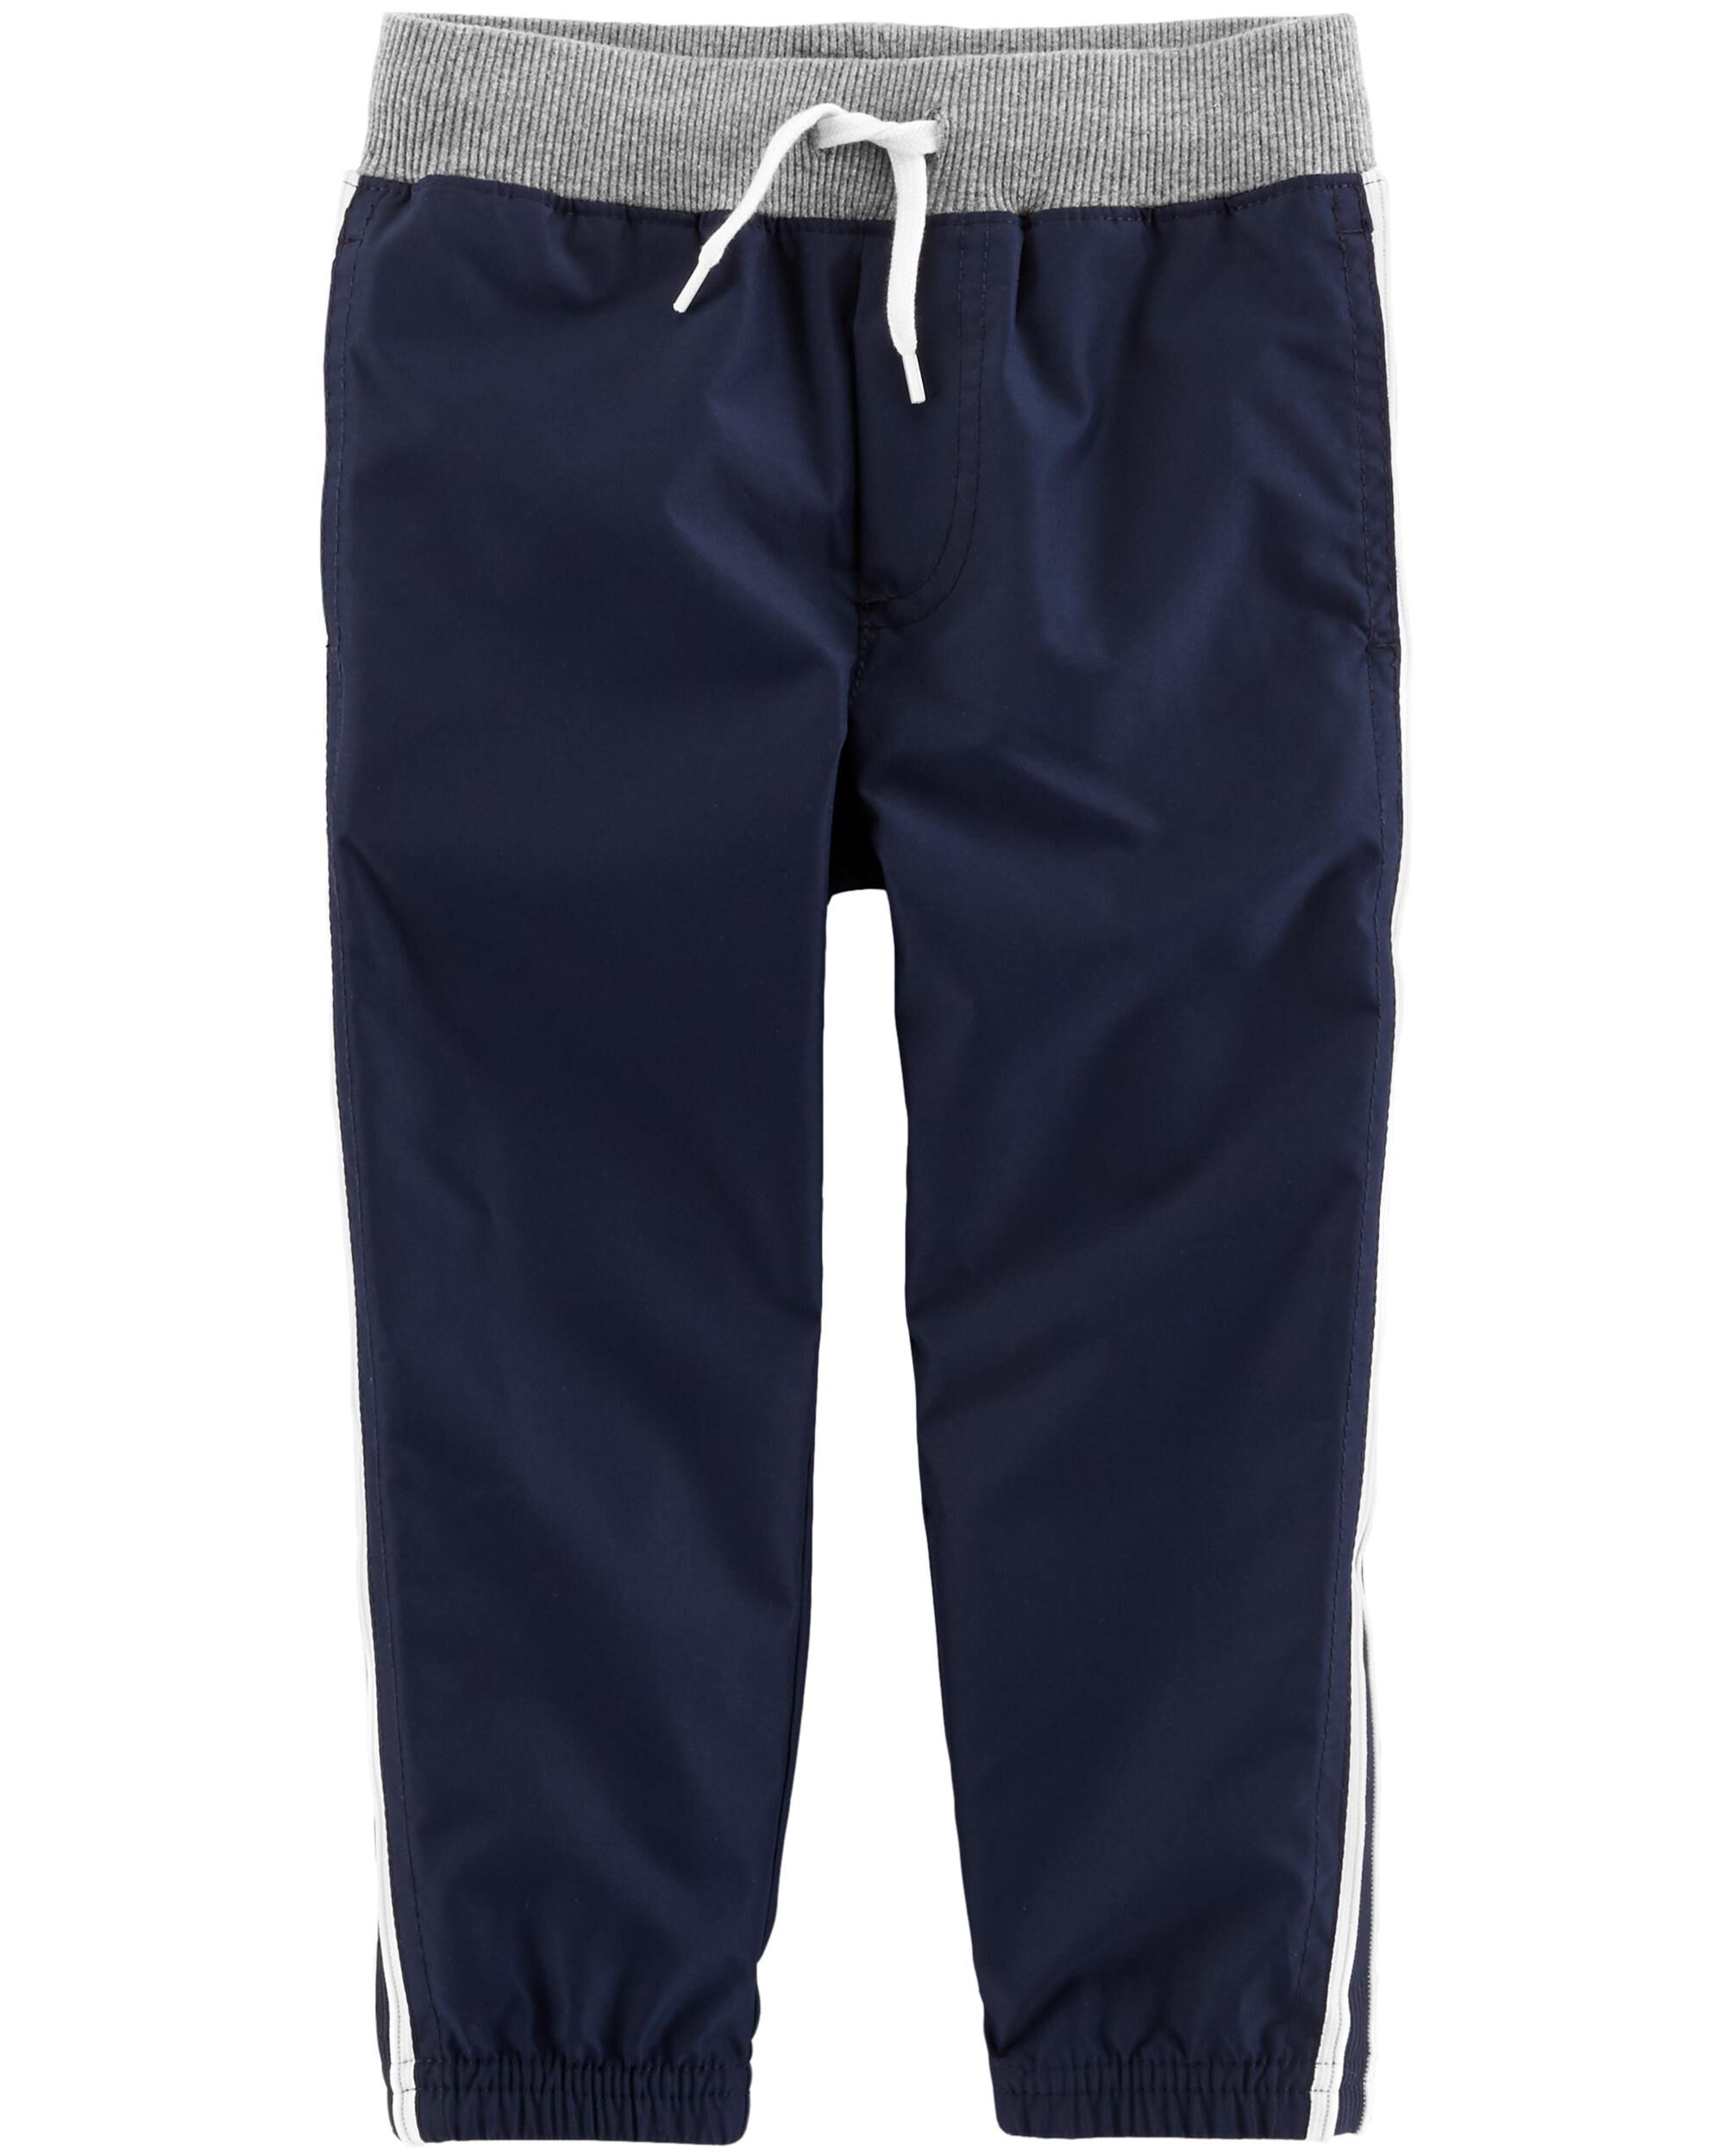 Oshkosh BGosh Baby Boys Jogger Shorts-Blue Stripes